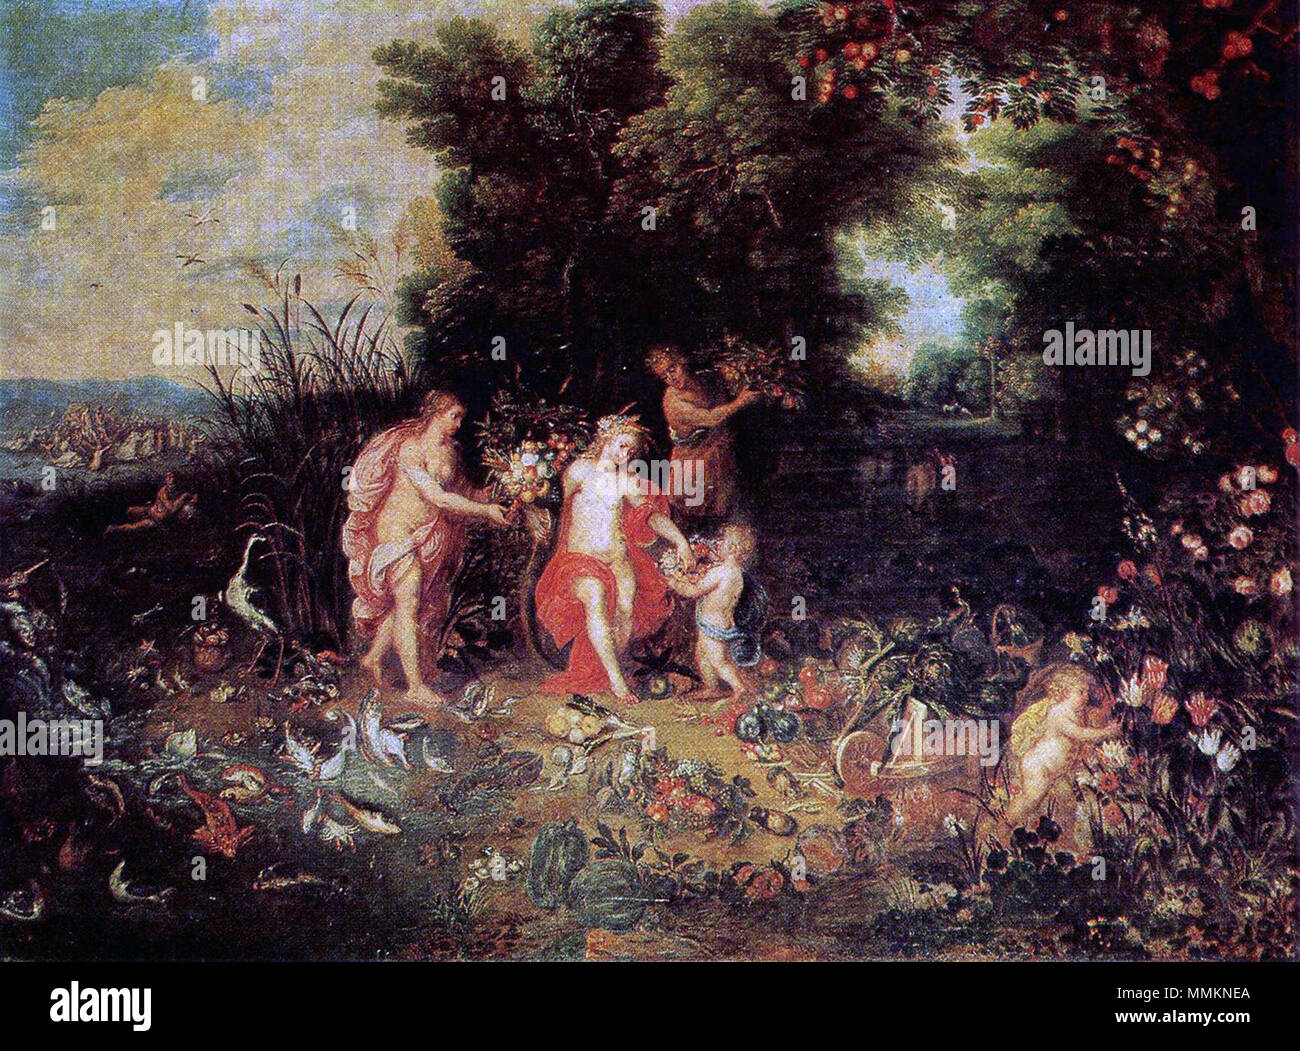 . Deutsch : Jan Brueghel d.J. und Hendrik van Balen (Figuren), Ceres (Amphitre und Erde Elemente der Allegorie und Wasser). Öl auf Leinwand, 62,5 x 84,5 cm. . 26 novembre 2015, 18:09:05 Artiste : Jan Brueghel l'Ancien (1568-1625) Noms alternatifs Jan Brueghel l'Ancien, Jan Bruegel (I), Brueghel de Velours Description peintre flamand, dessinateur et graveur Date de naissance/décès 1568 13 janvier 1625 Lieu de naissance/décès Bruxelles Anvers à partir de 1578 jusqu'à la période de travail lieu de travail 1625 Anvers (1578), Italie (1589-1596), Naples (1590), Rome (1592-1594), Milan (1595-1596), Anvers (159 Banque D'Images